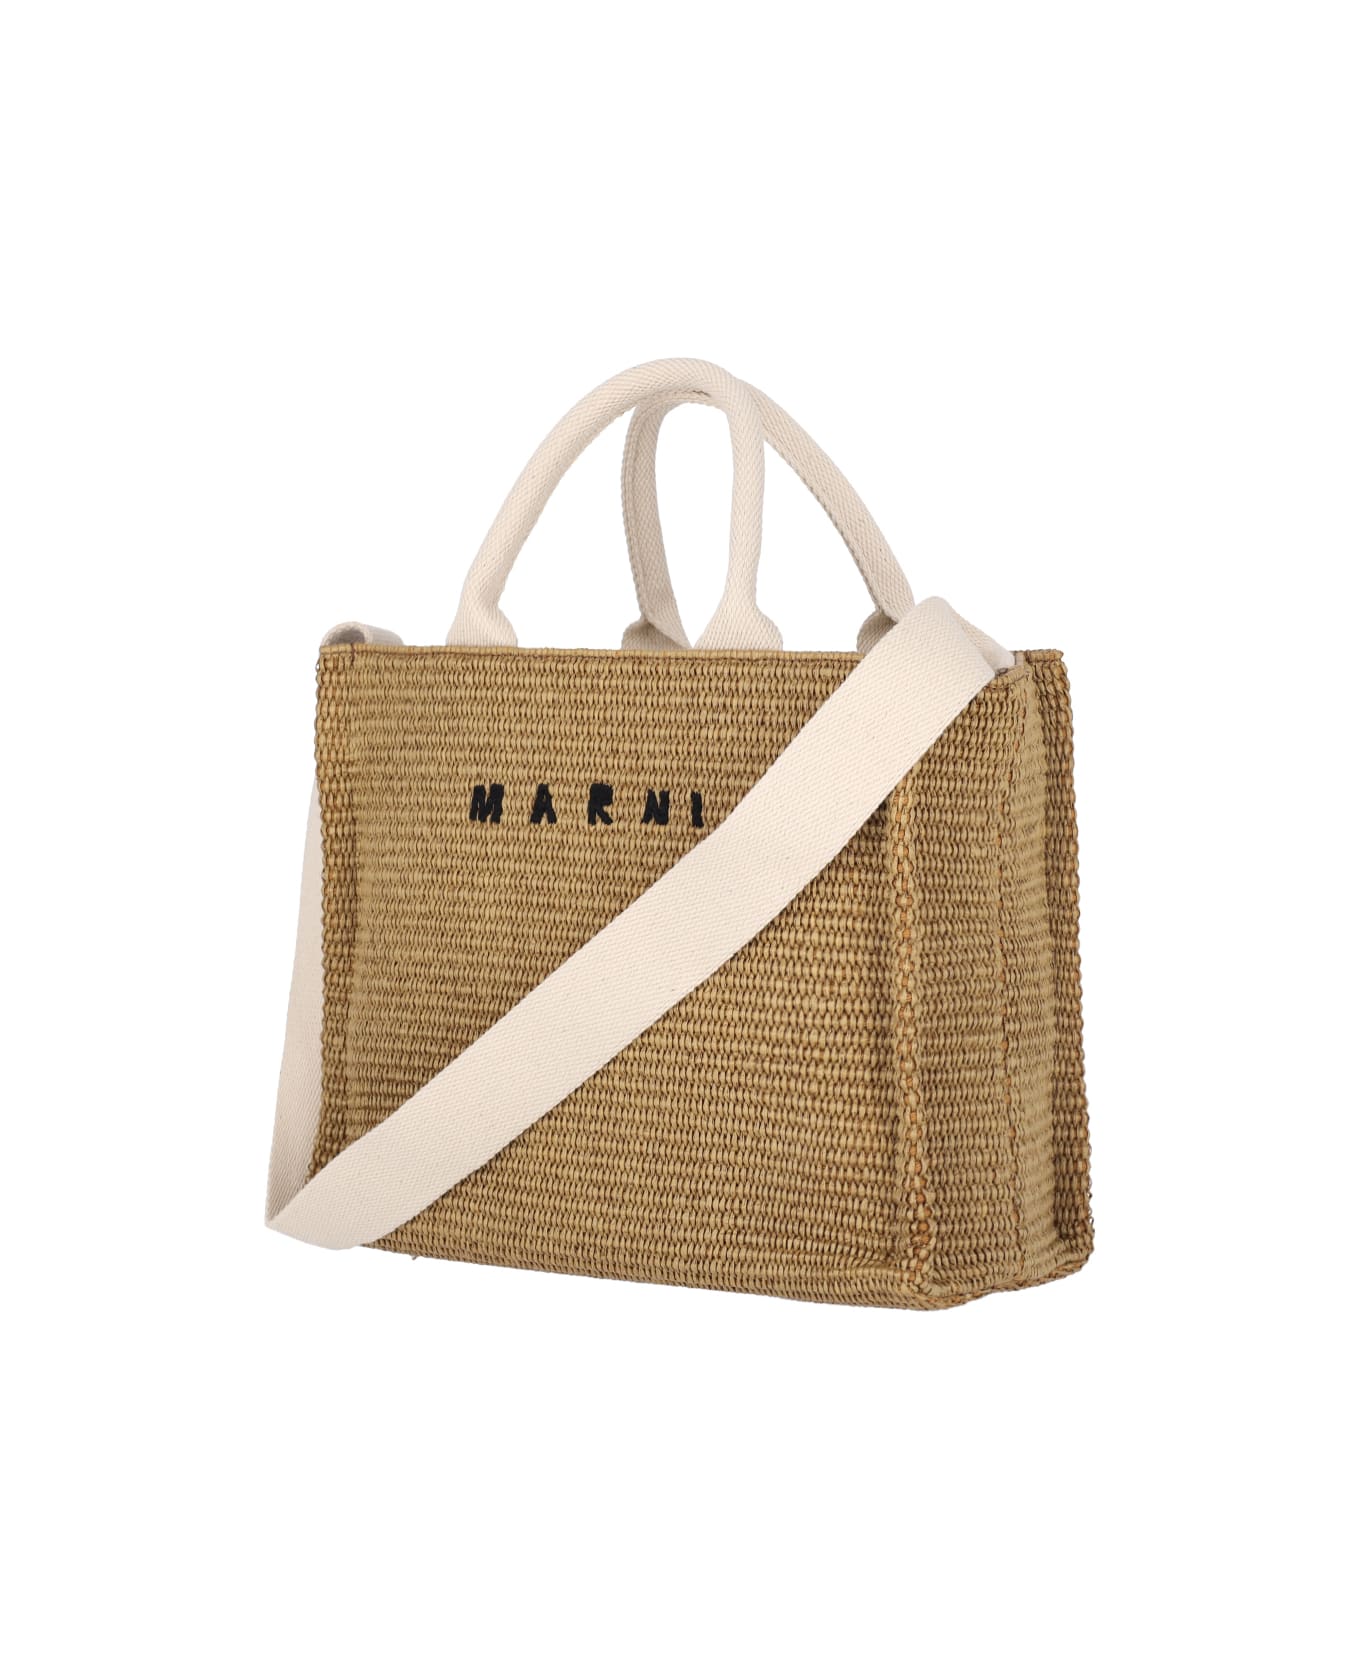 Marni Logo Small Tote Bag - Brown トートバッグ